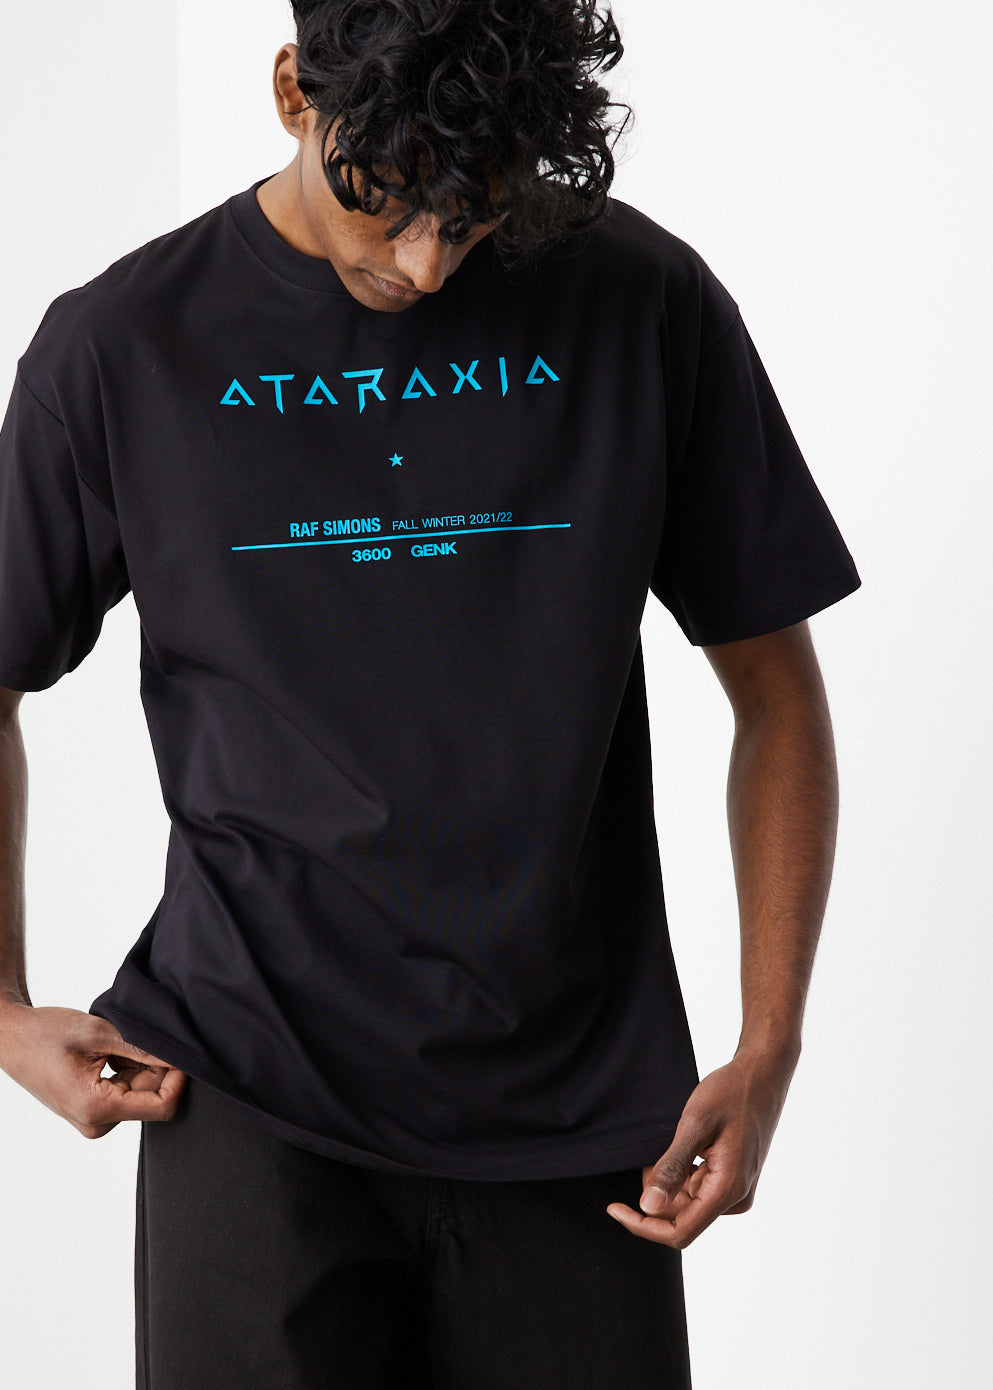 Big Fit Tour Ataraxia T-Shirt